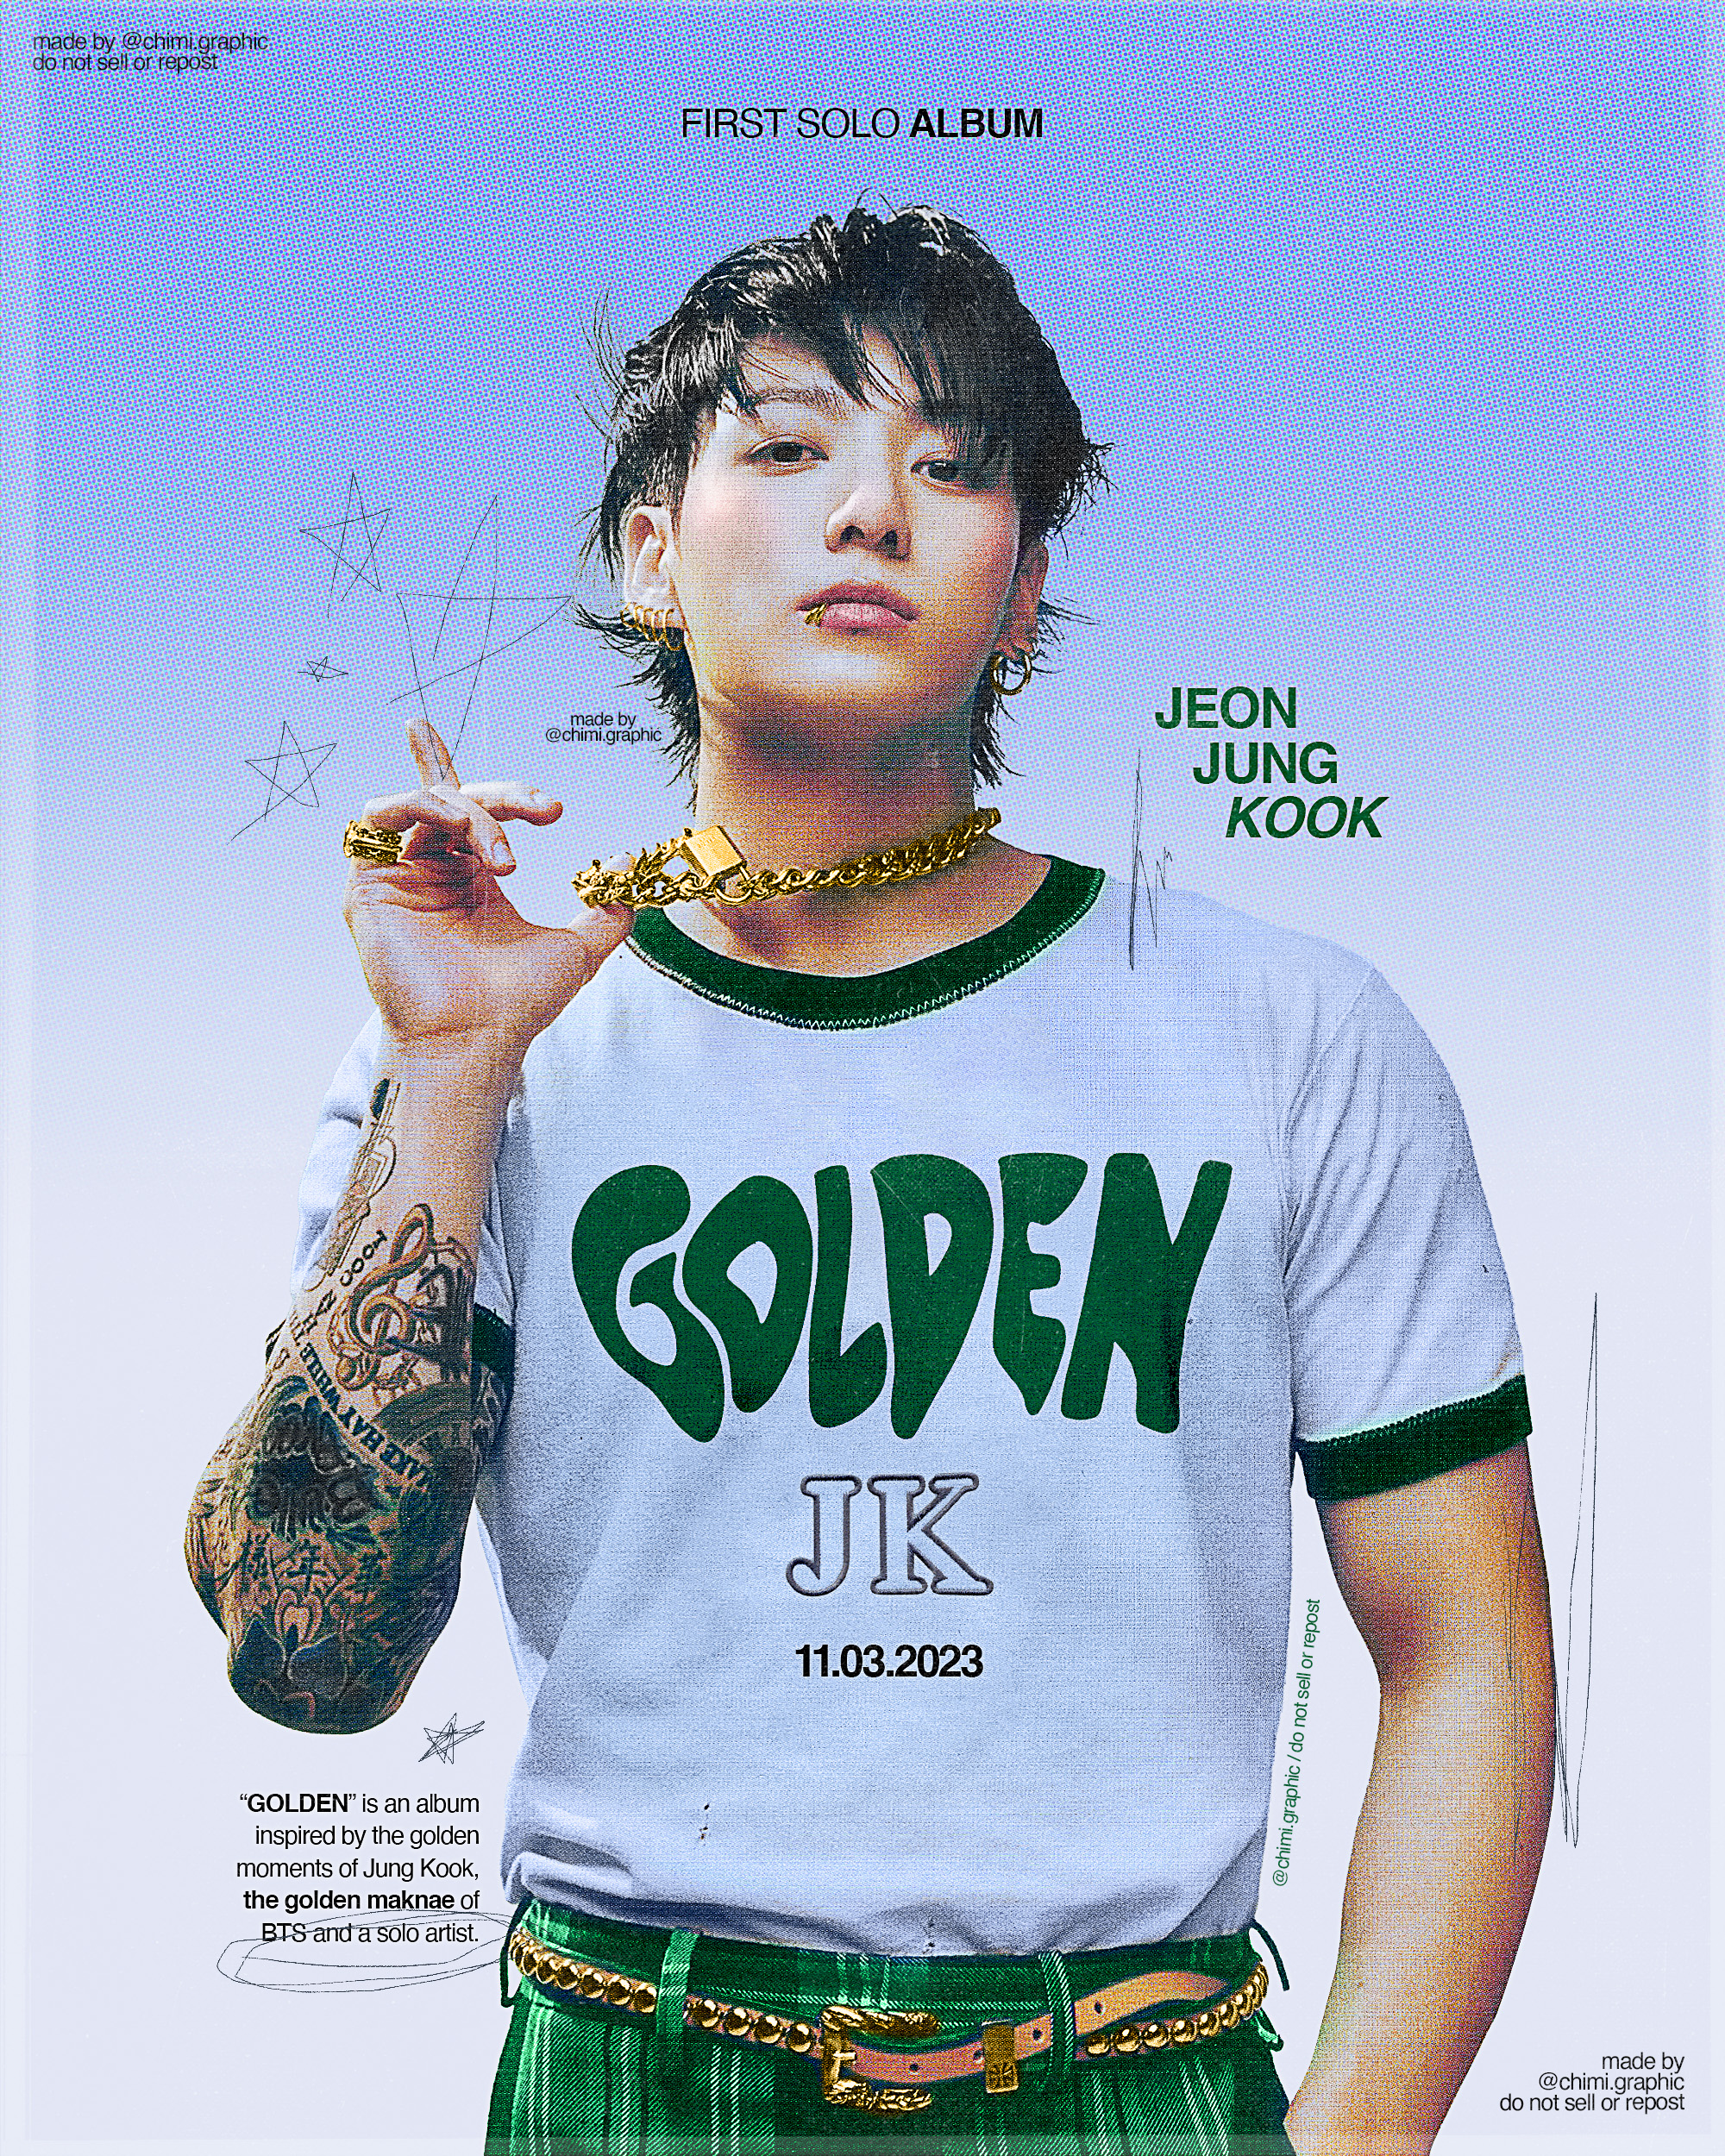 10 records Jung Kook broke ahead of GOLDEN album launch, Golden Jungkook  Album